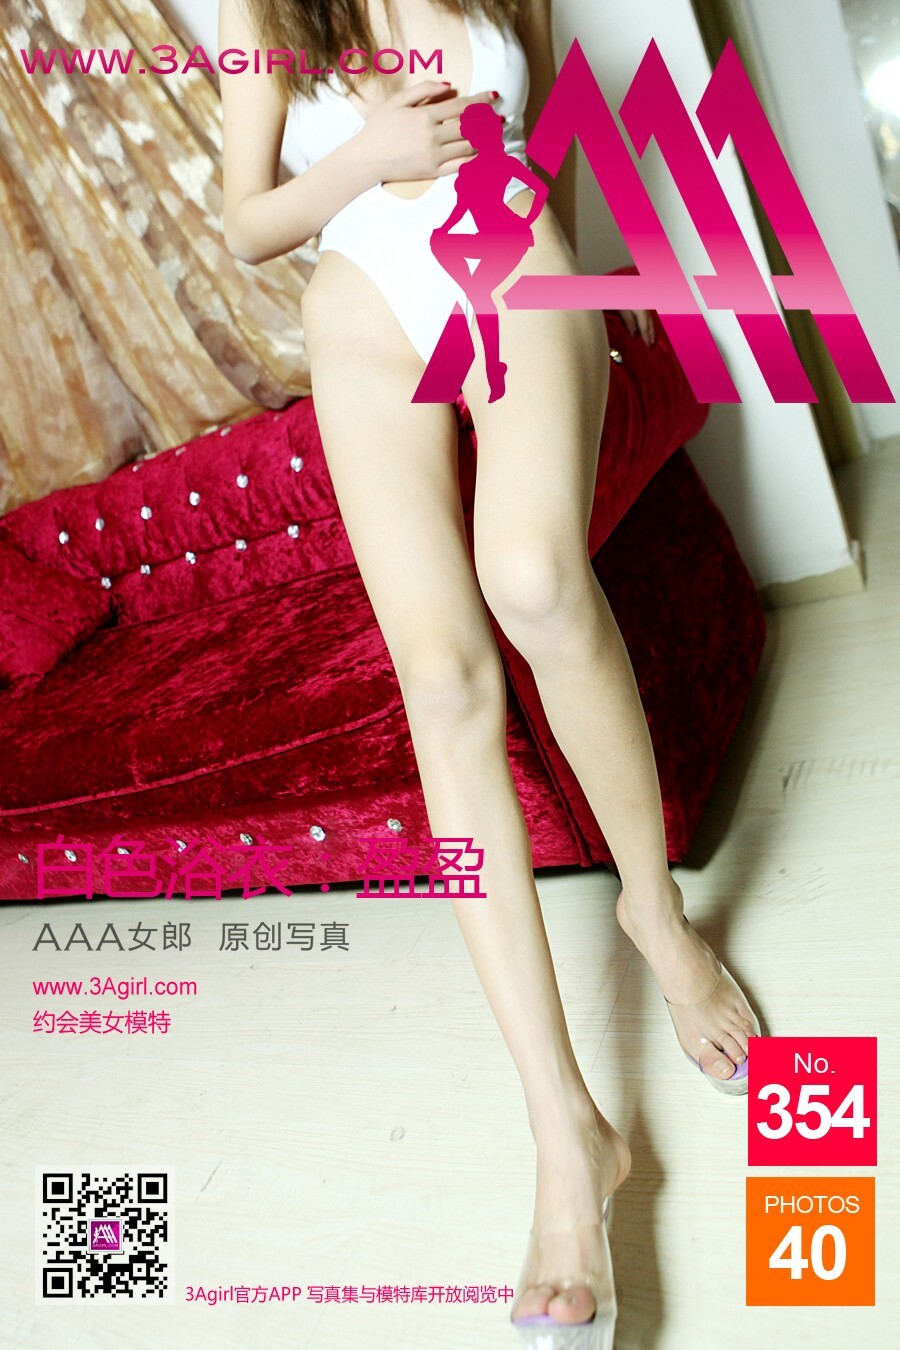 [3agirl] 2014.12.23 no.354 AAA girl white bathrobe: yingying